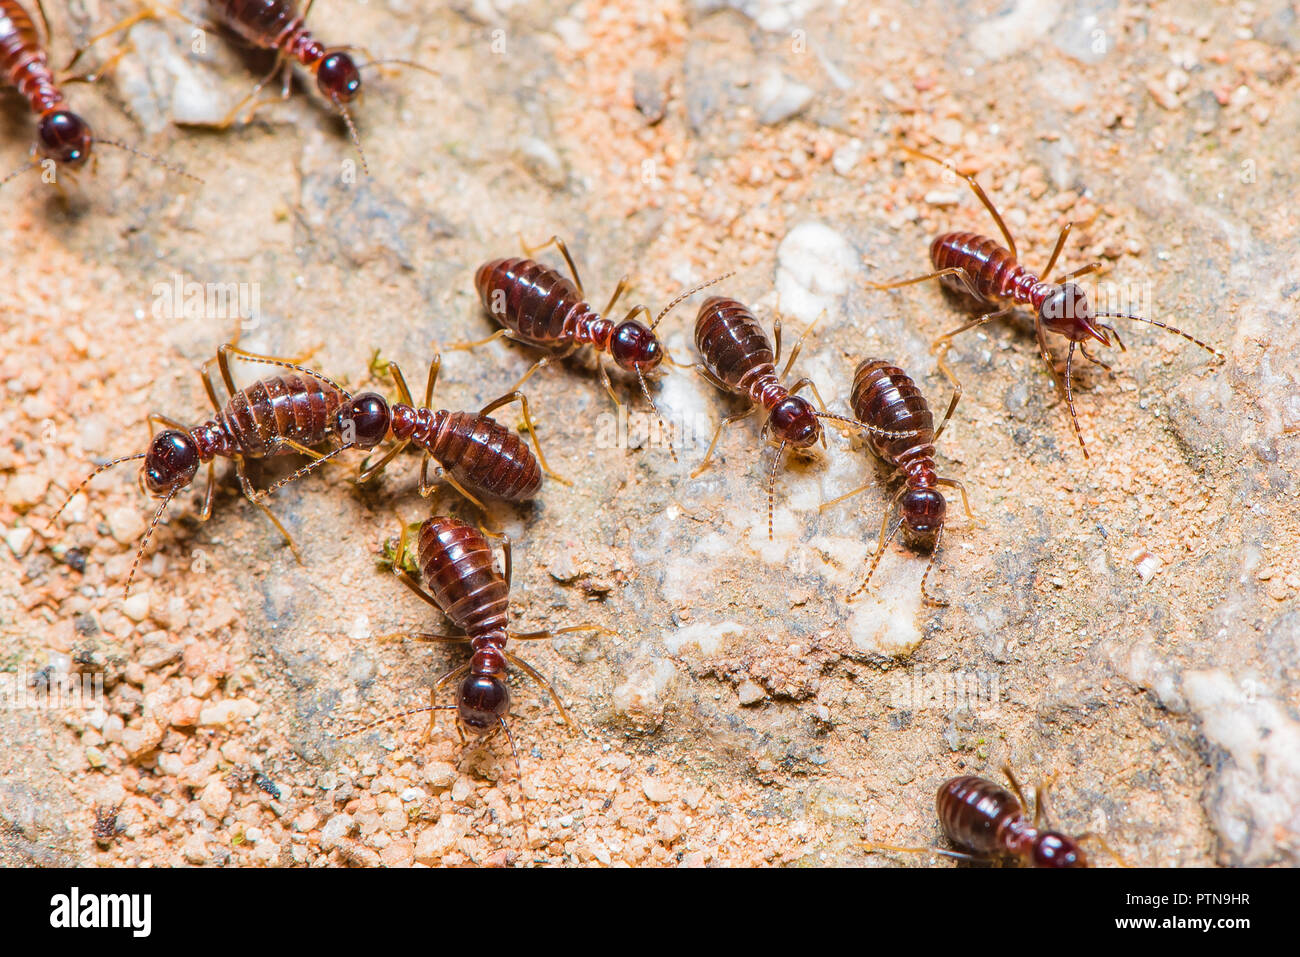 Les termites sont brun foncé, marche sur le terrain jusqu'à leur nid. Banque D'Images